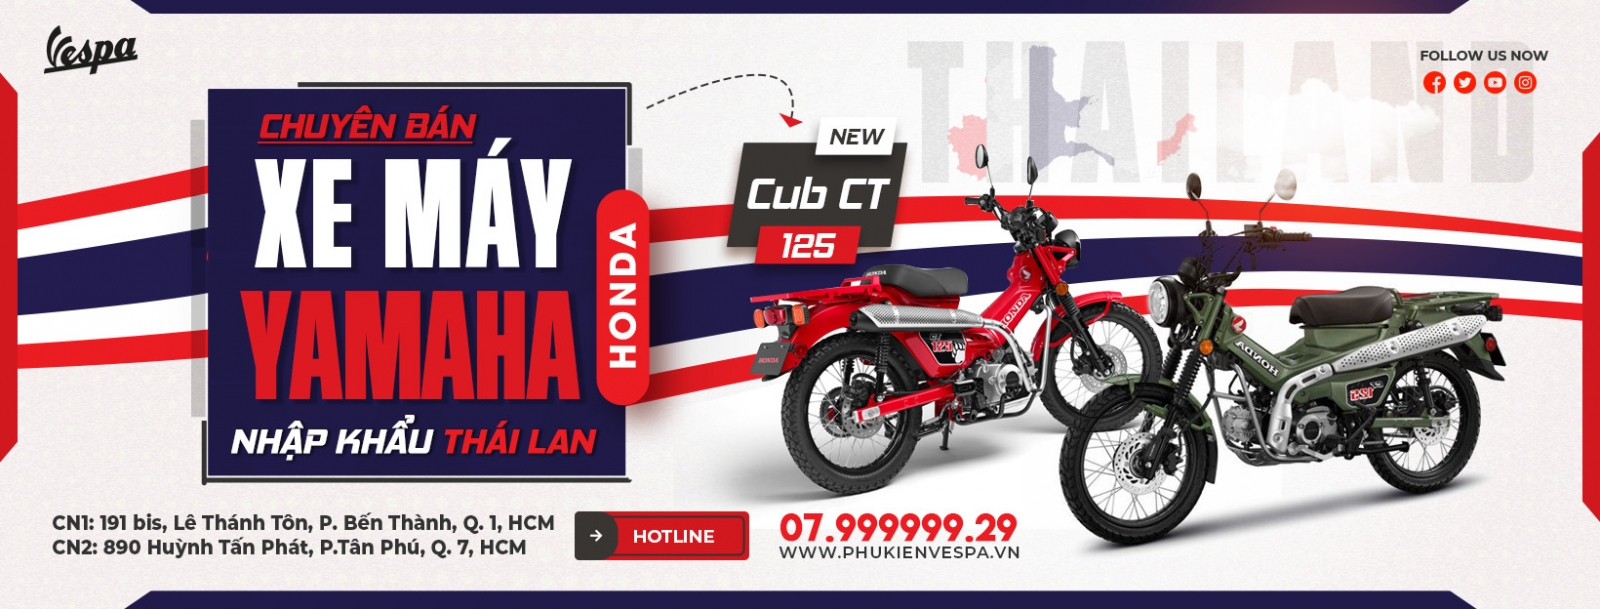 Mua xe Honda Cup CT125 Hunter Thailand nhập khẩu ở đâu giá rẻ tại tphcm?